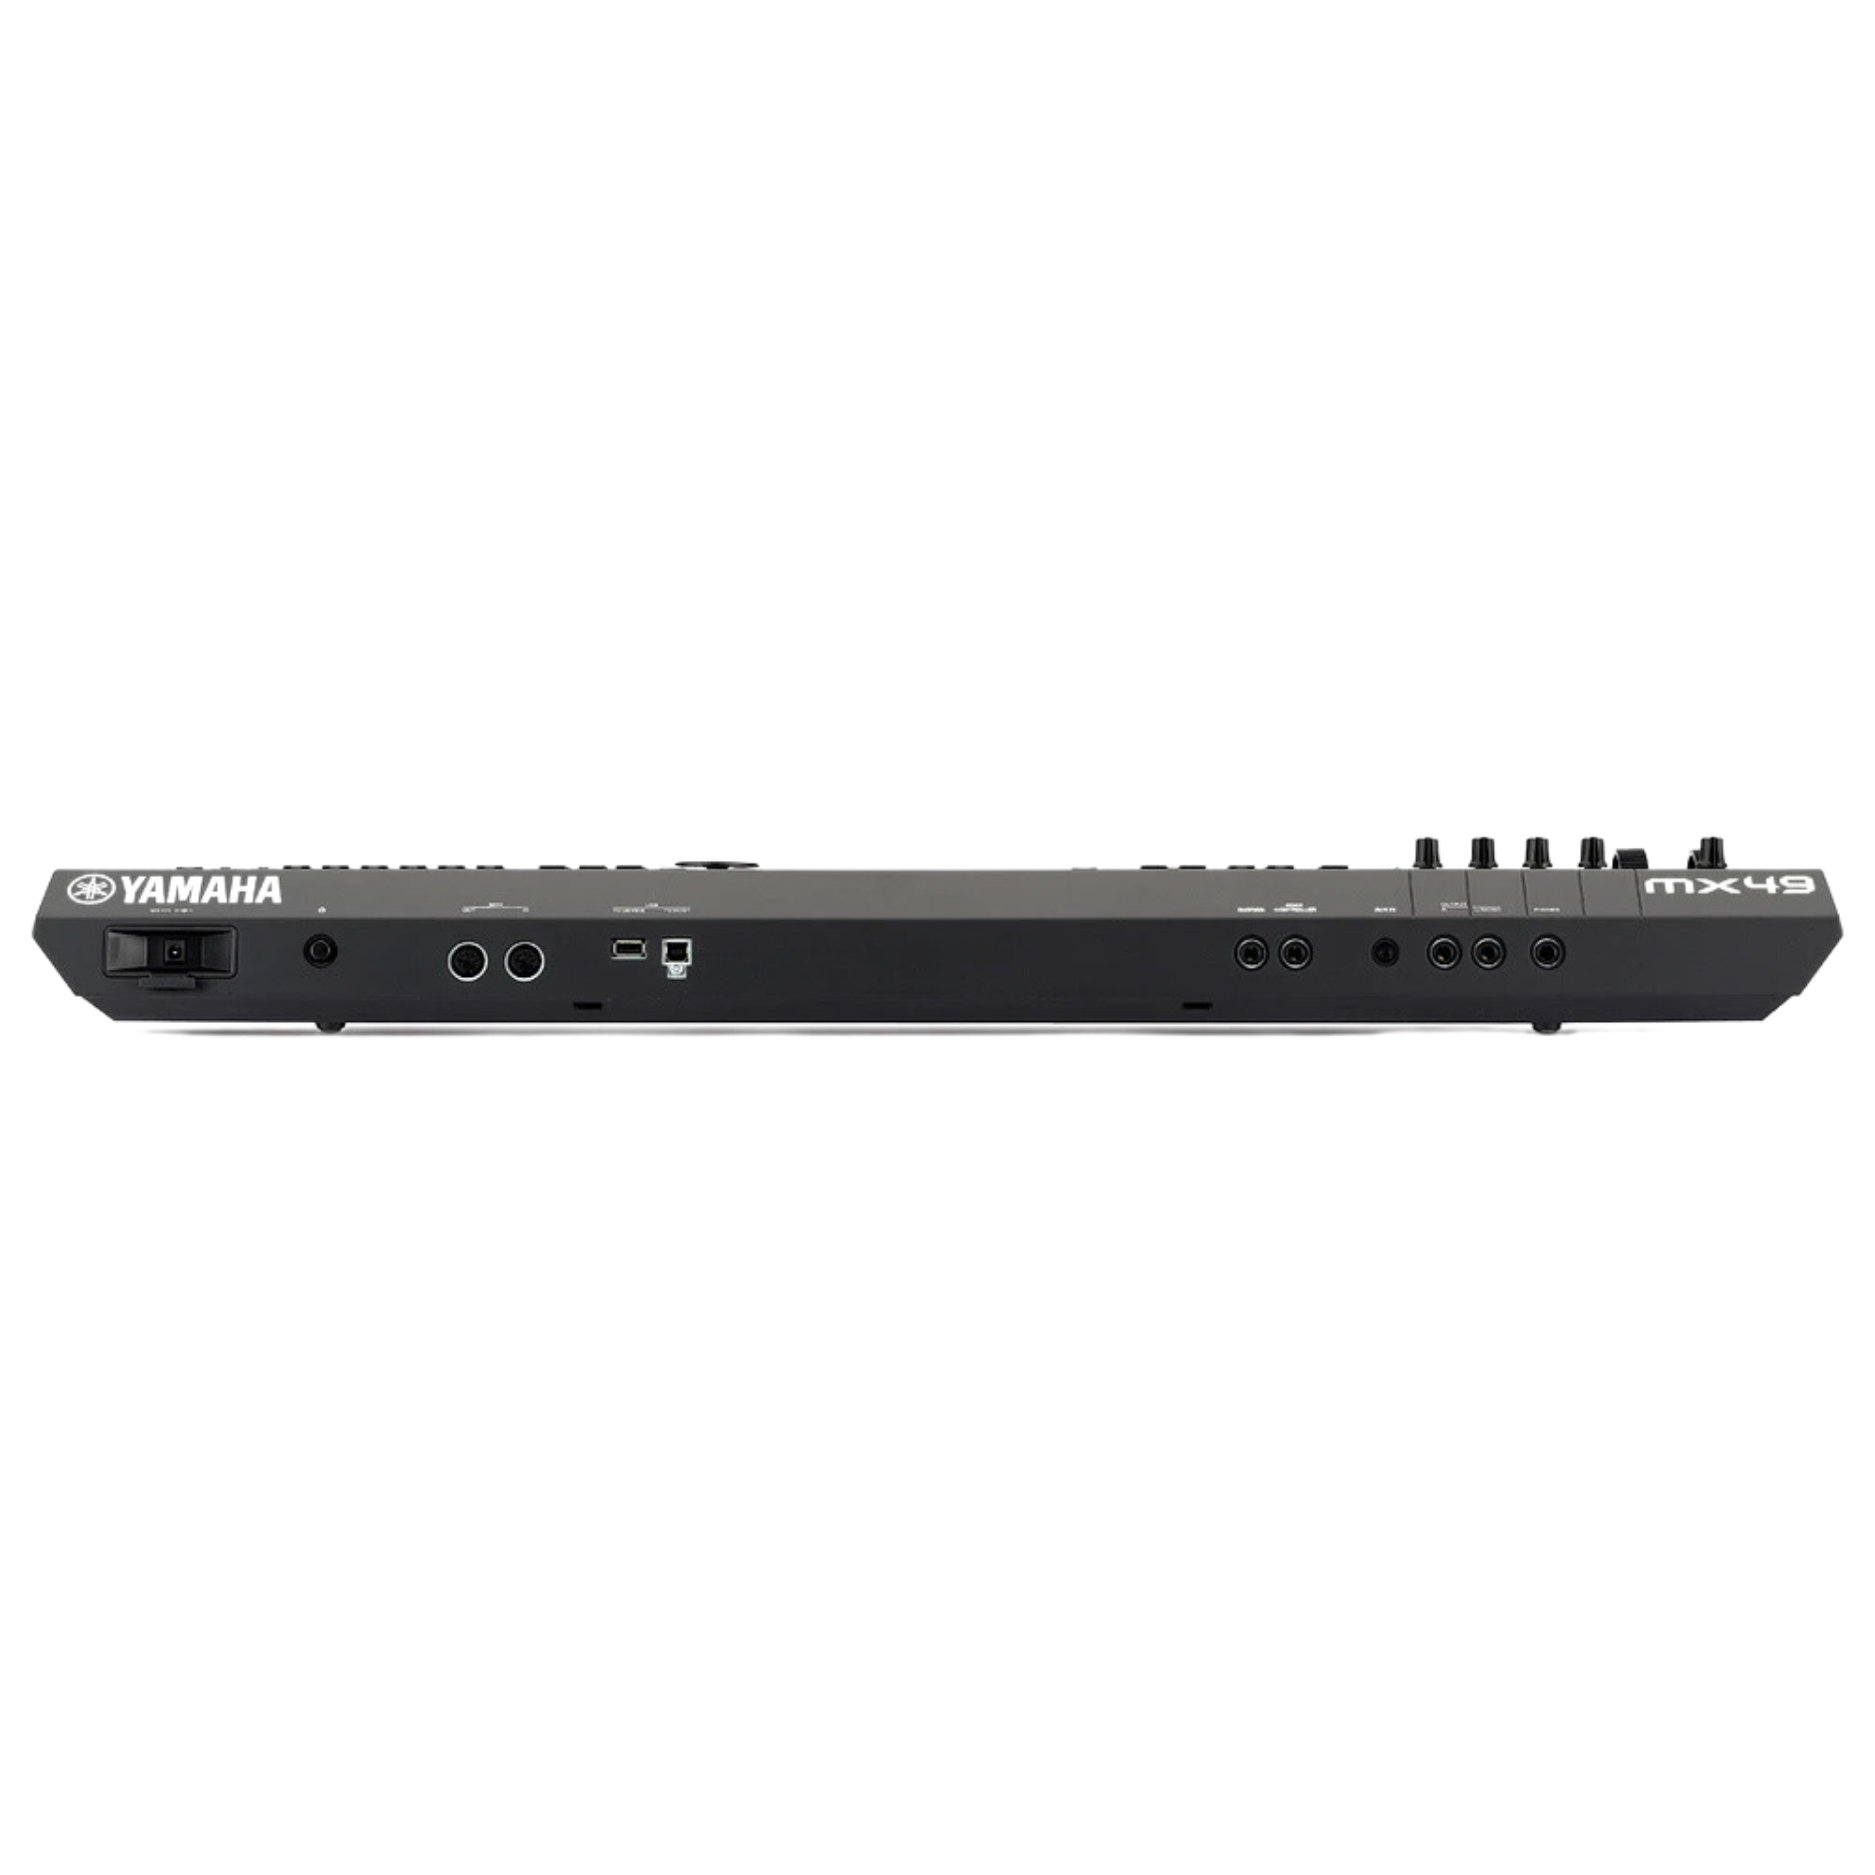 Yamaha MX-49 49-Key Music Synthesizer with MIDI Cable - Black